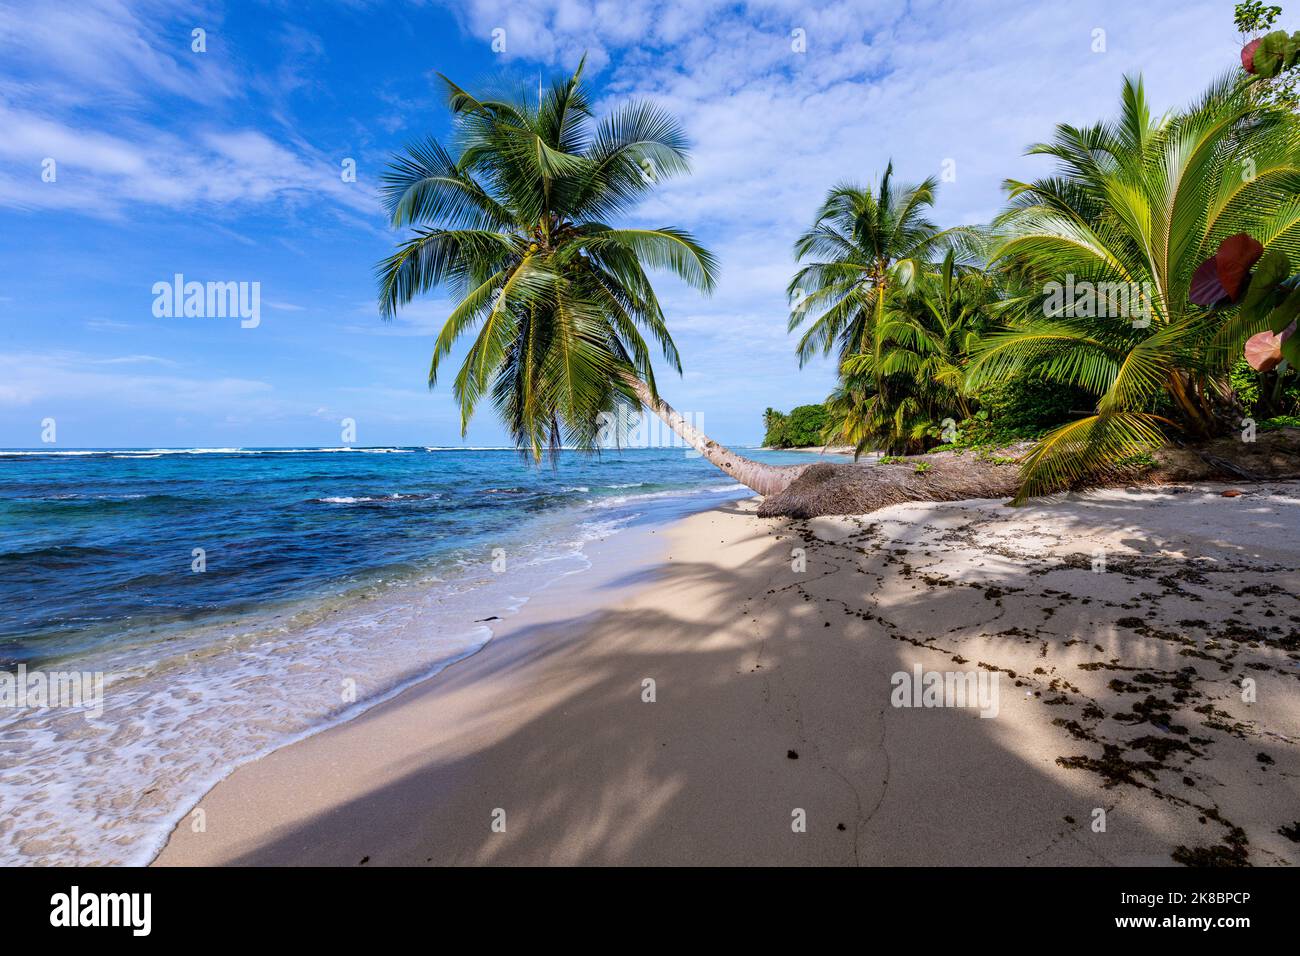 Tropischer Strand. Friedlicher karibischer Strand mit Palmen. Bastimentos Island, Bocas del Toro, Mittelamerika, Panama. Stockfoto